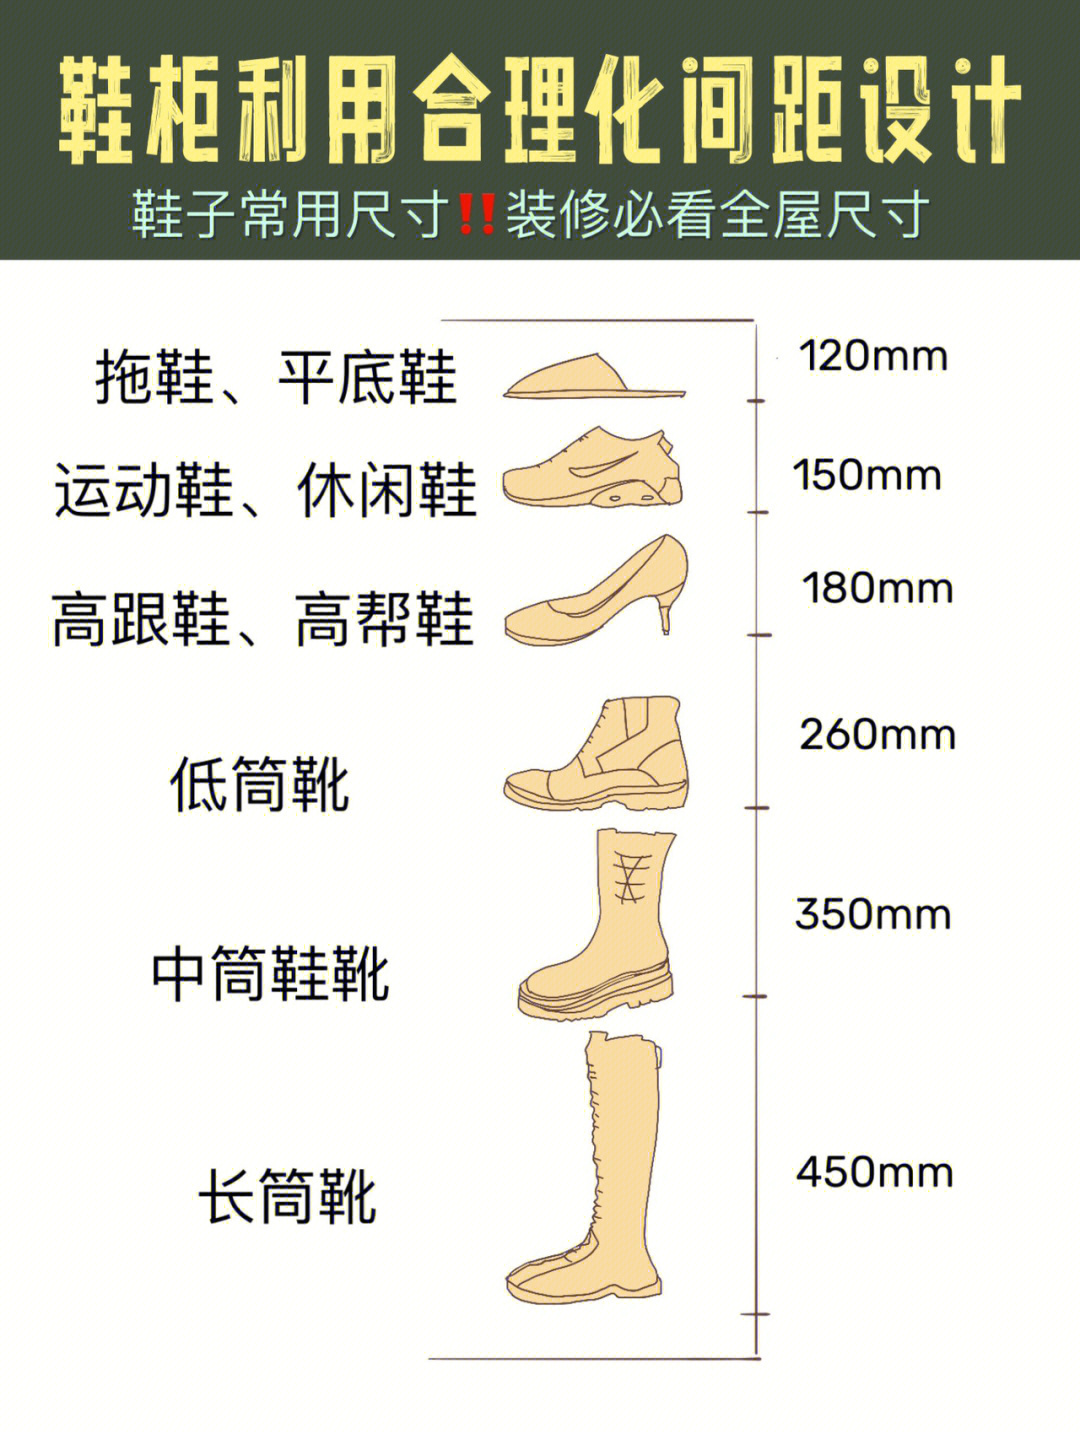 靴筒尺寸图解图片